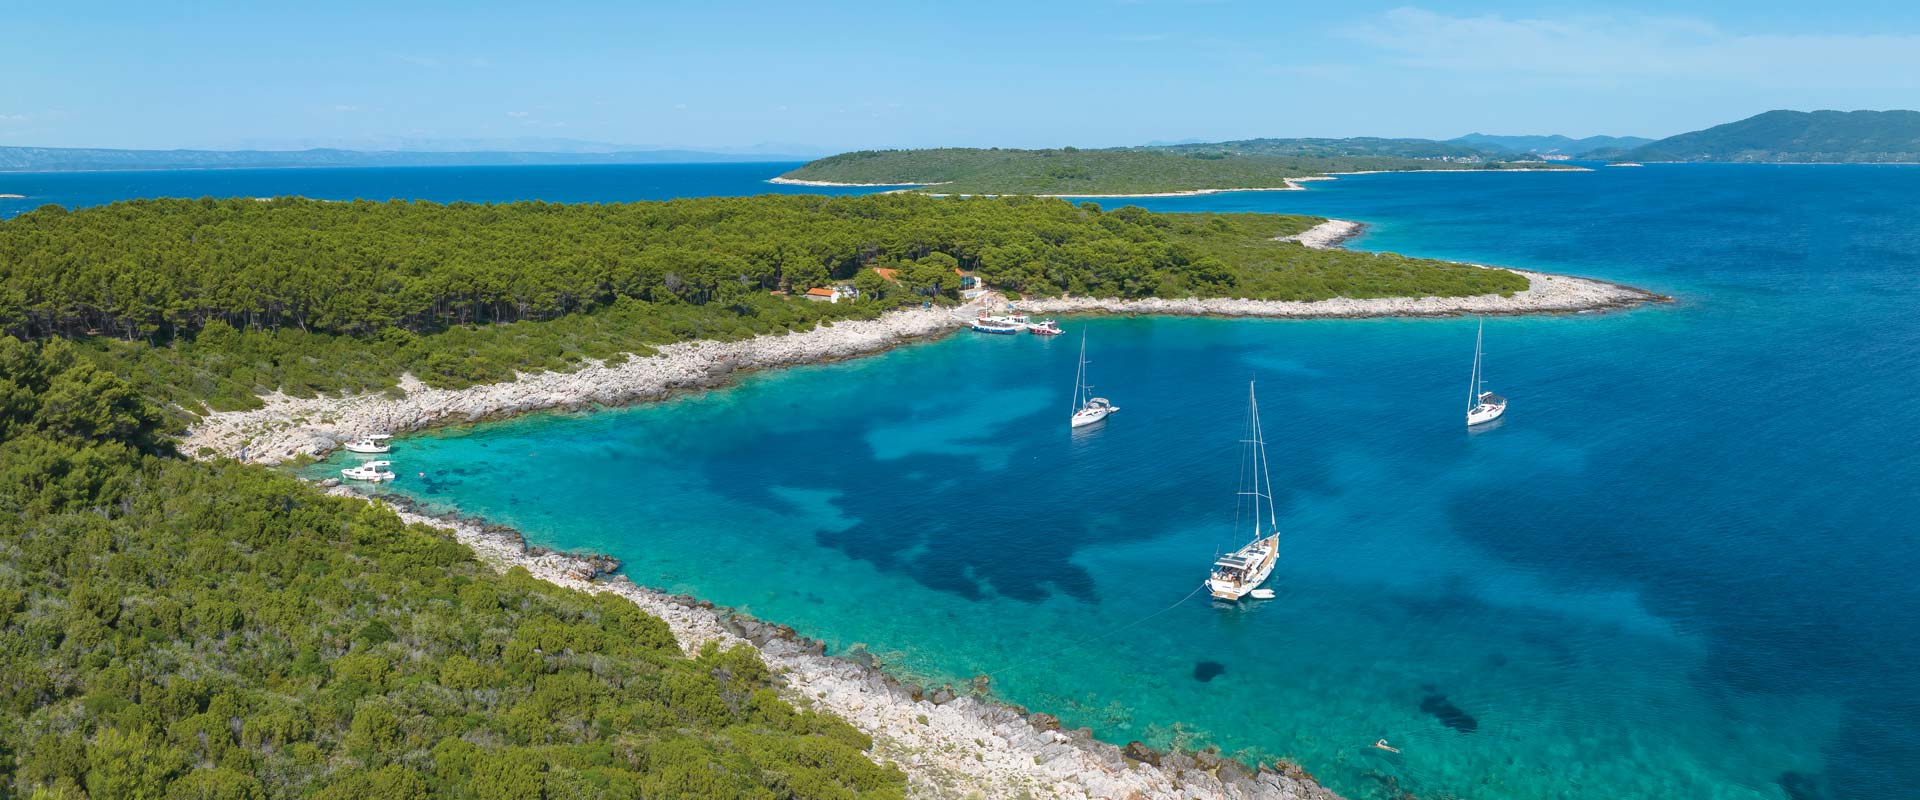 Scopri i lati più belli della Croazia